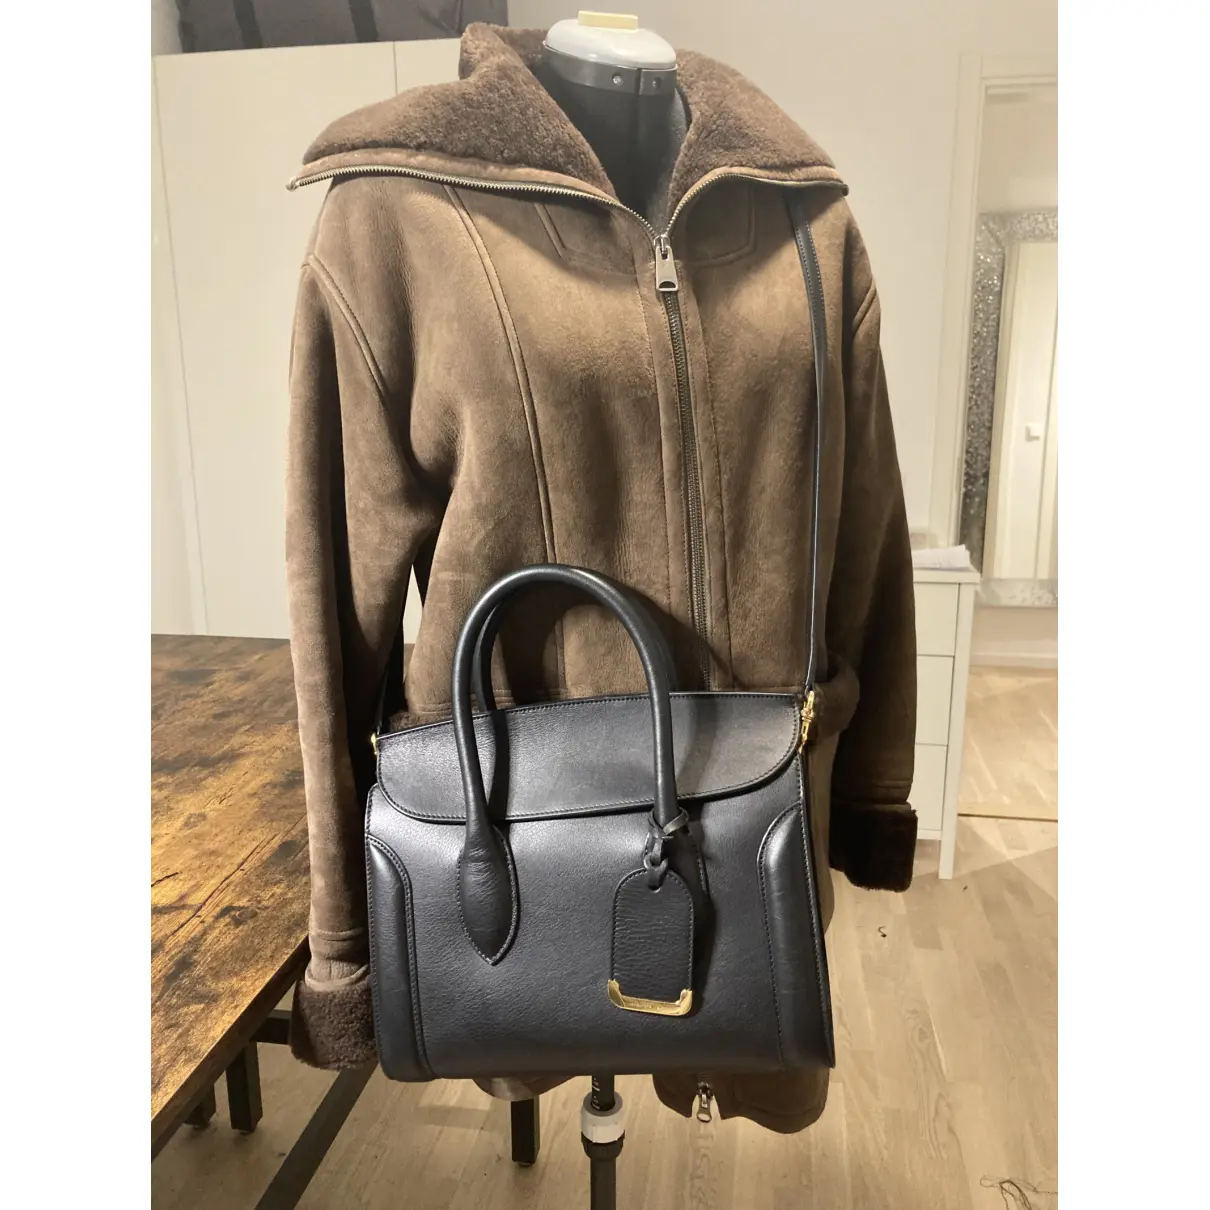 Heroine leather handbag Alexander McQueen